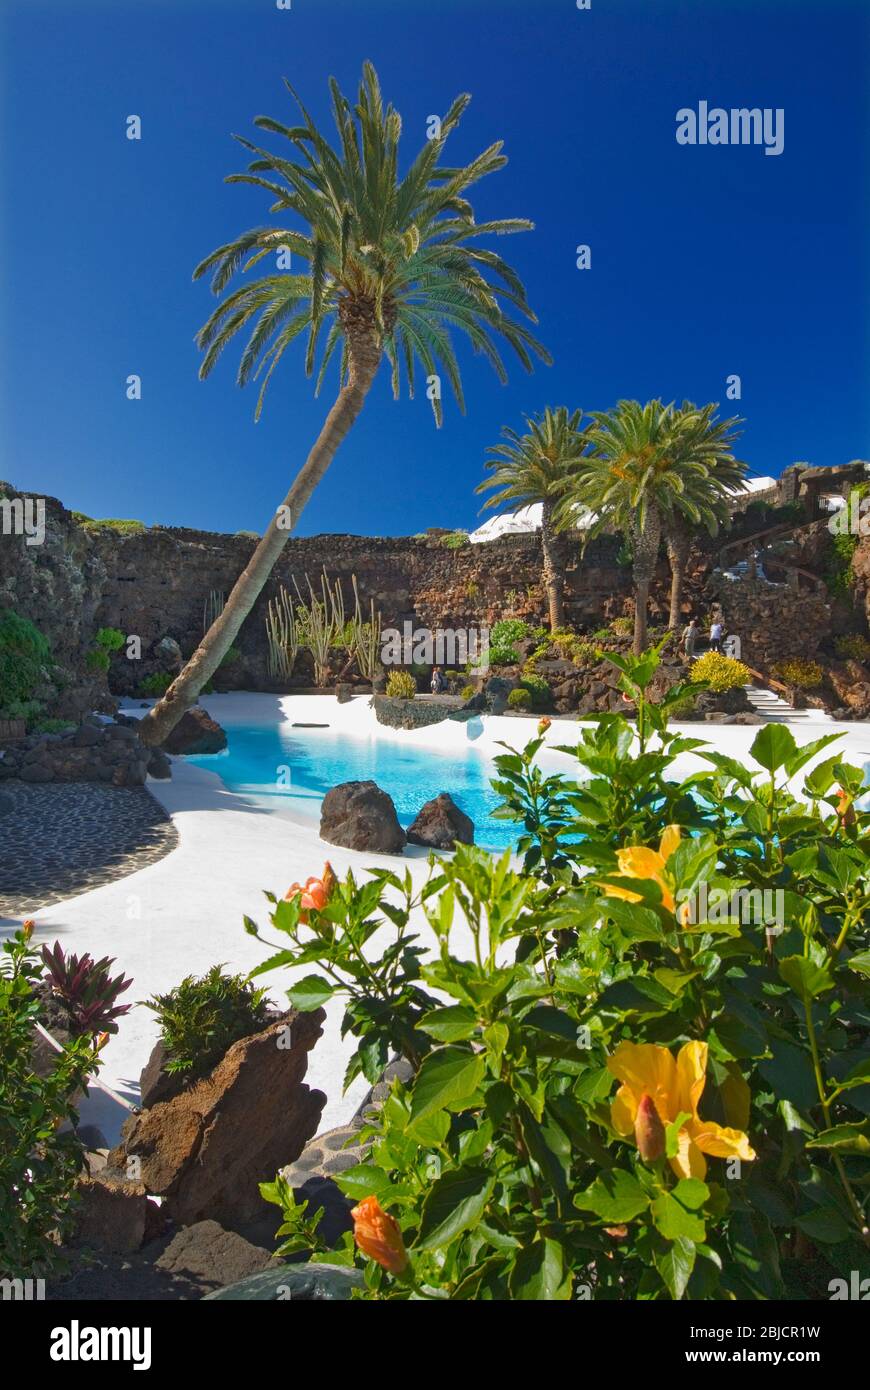 Piscine Jameos del Agua avec palmiers et plantes tropicales exotiques, conçue par Manrique Lanzarote îles Canaries Espagne Banque D'Images